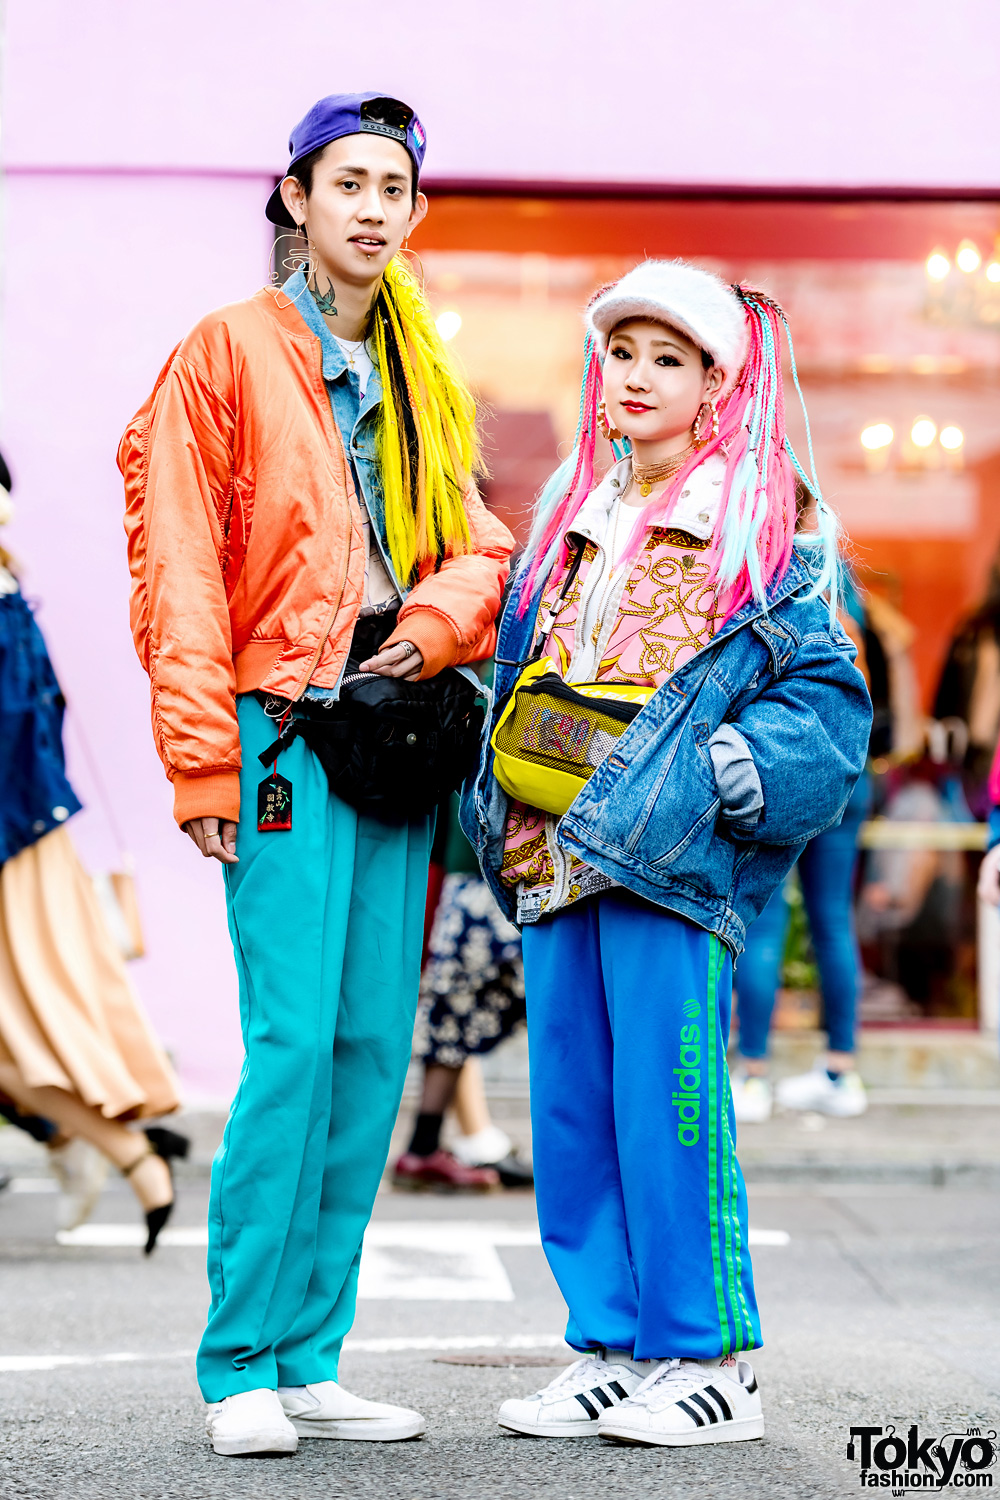 Japanese Duo w/ Colorful Hair & Vintage Streetwear Styles